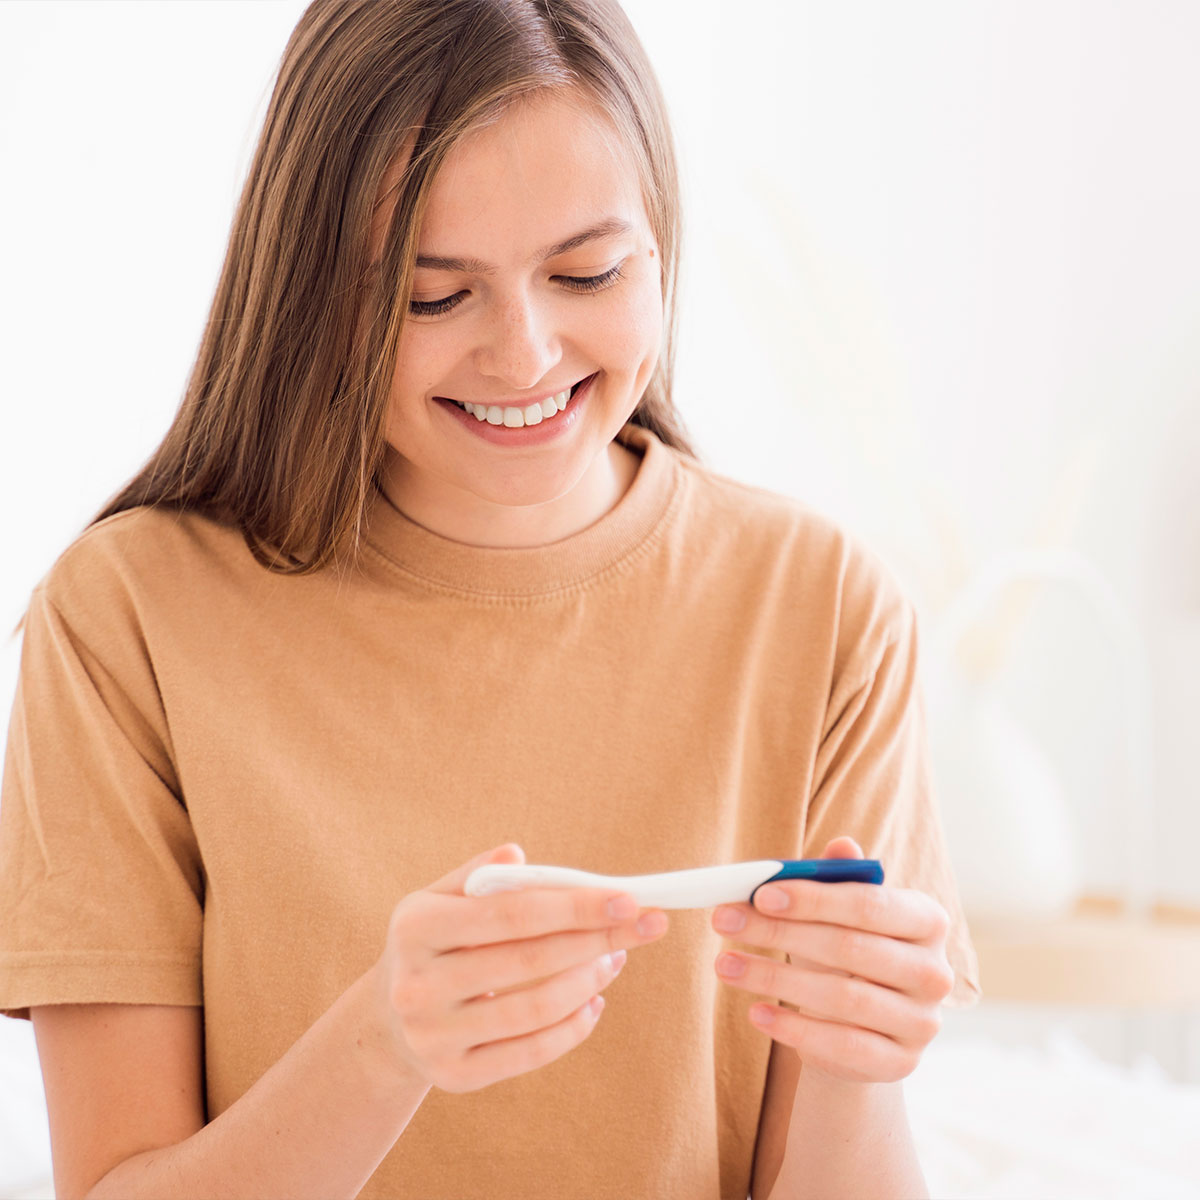 Test de embarazo: cómo y cuándo se realiza la prueba casera